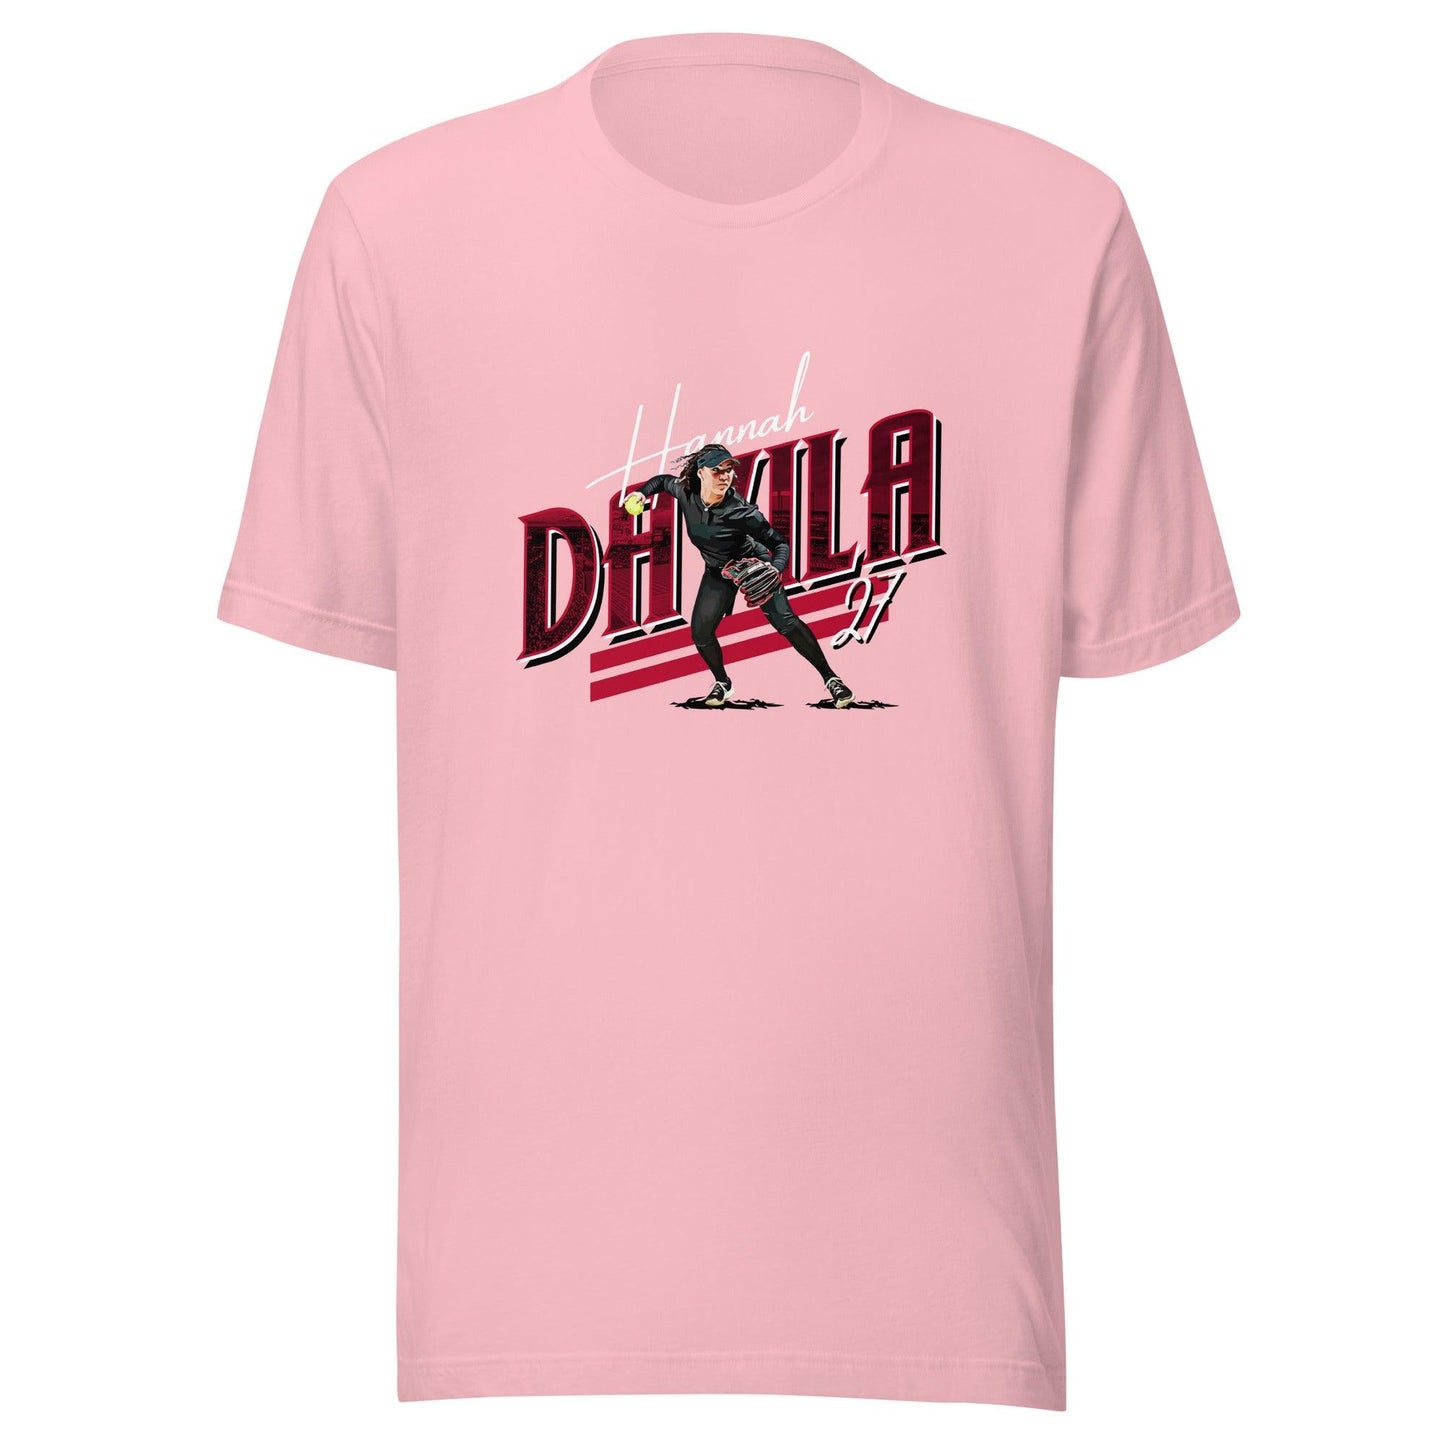 Hannah Davila "Gameday" t-shirt - Fan Arch